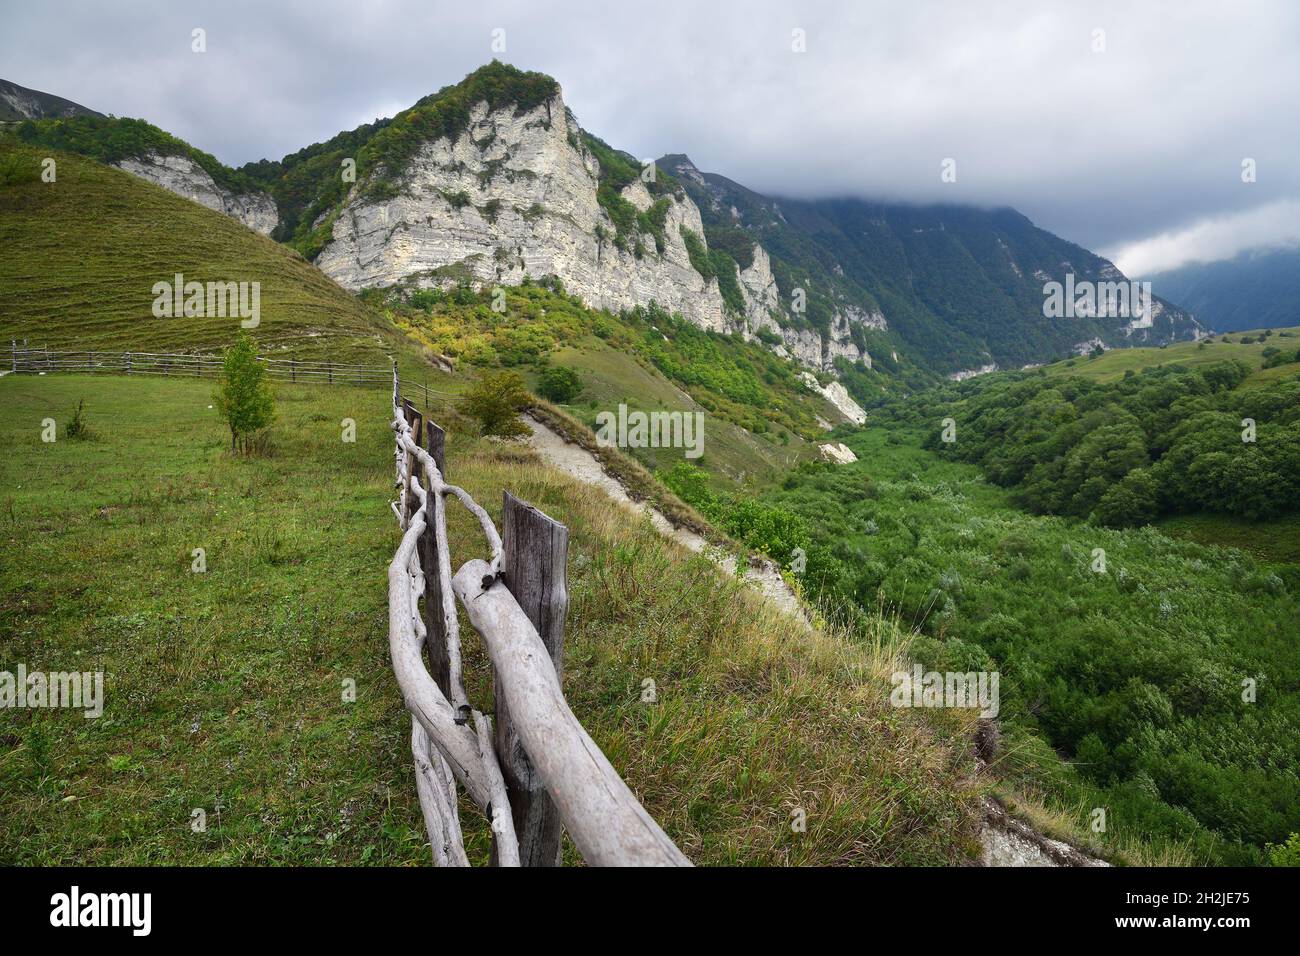 Caucasus alpine meadow in mountains in Chechnya, Russia. Vedeno district of the Chechen Republic Stock Photo